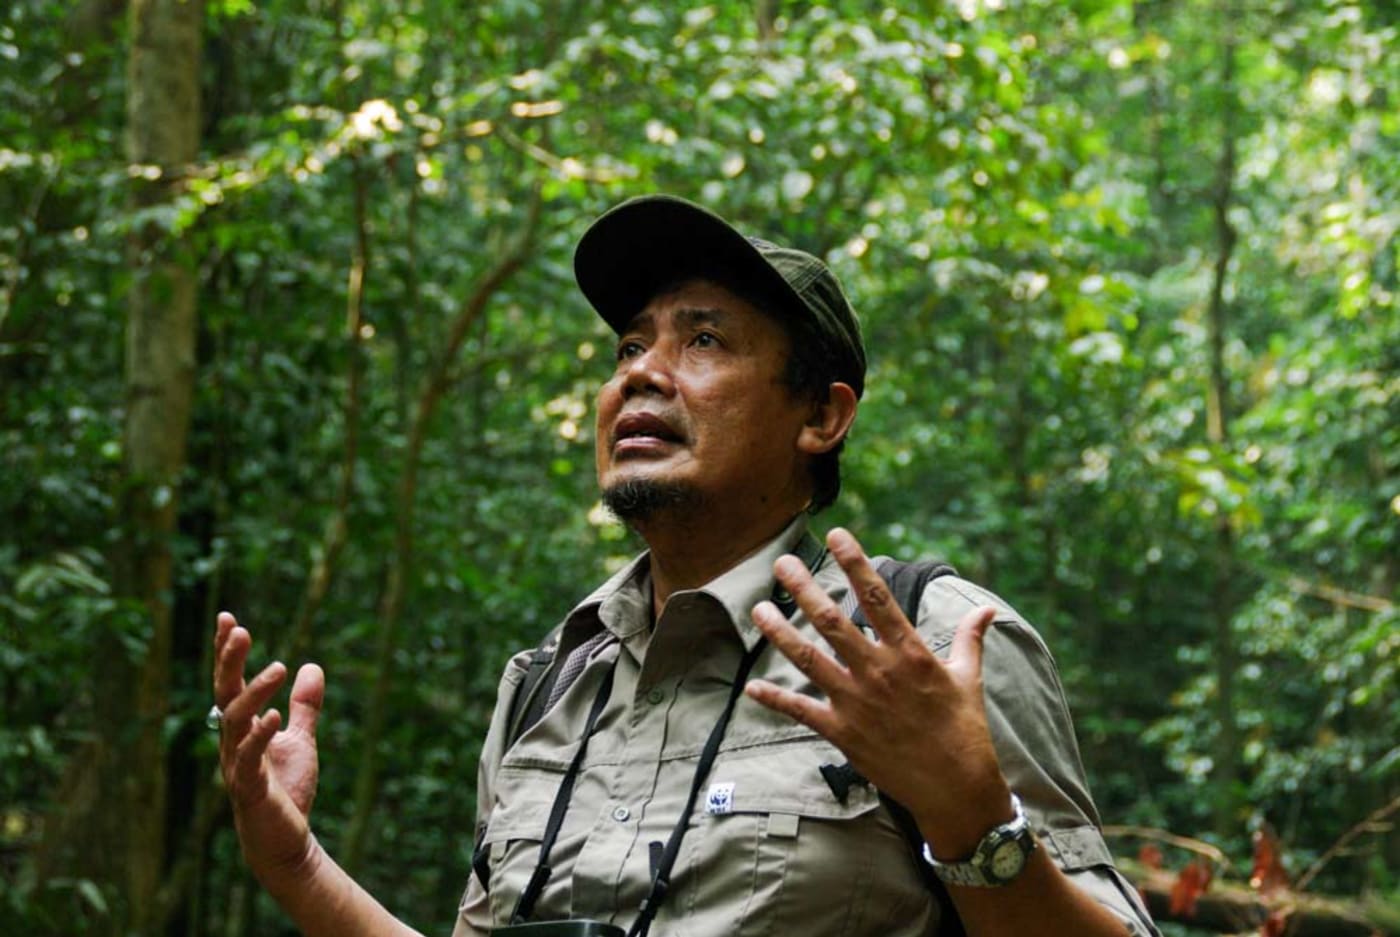 The head of WWF's orangutan program, Uyung, in a borneo forrest